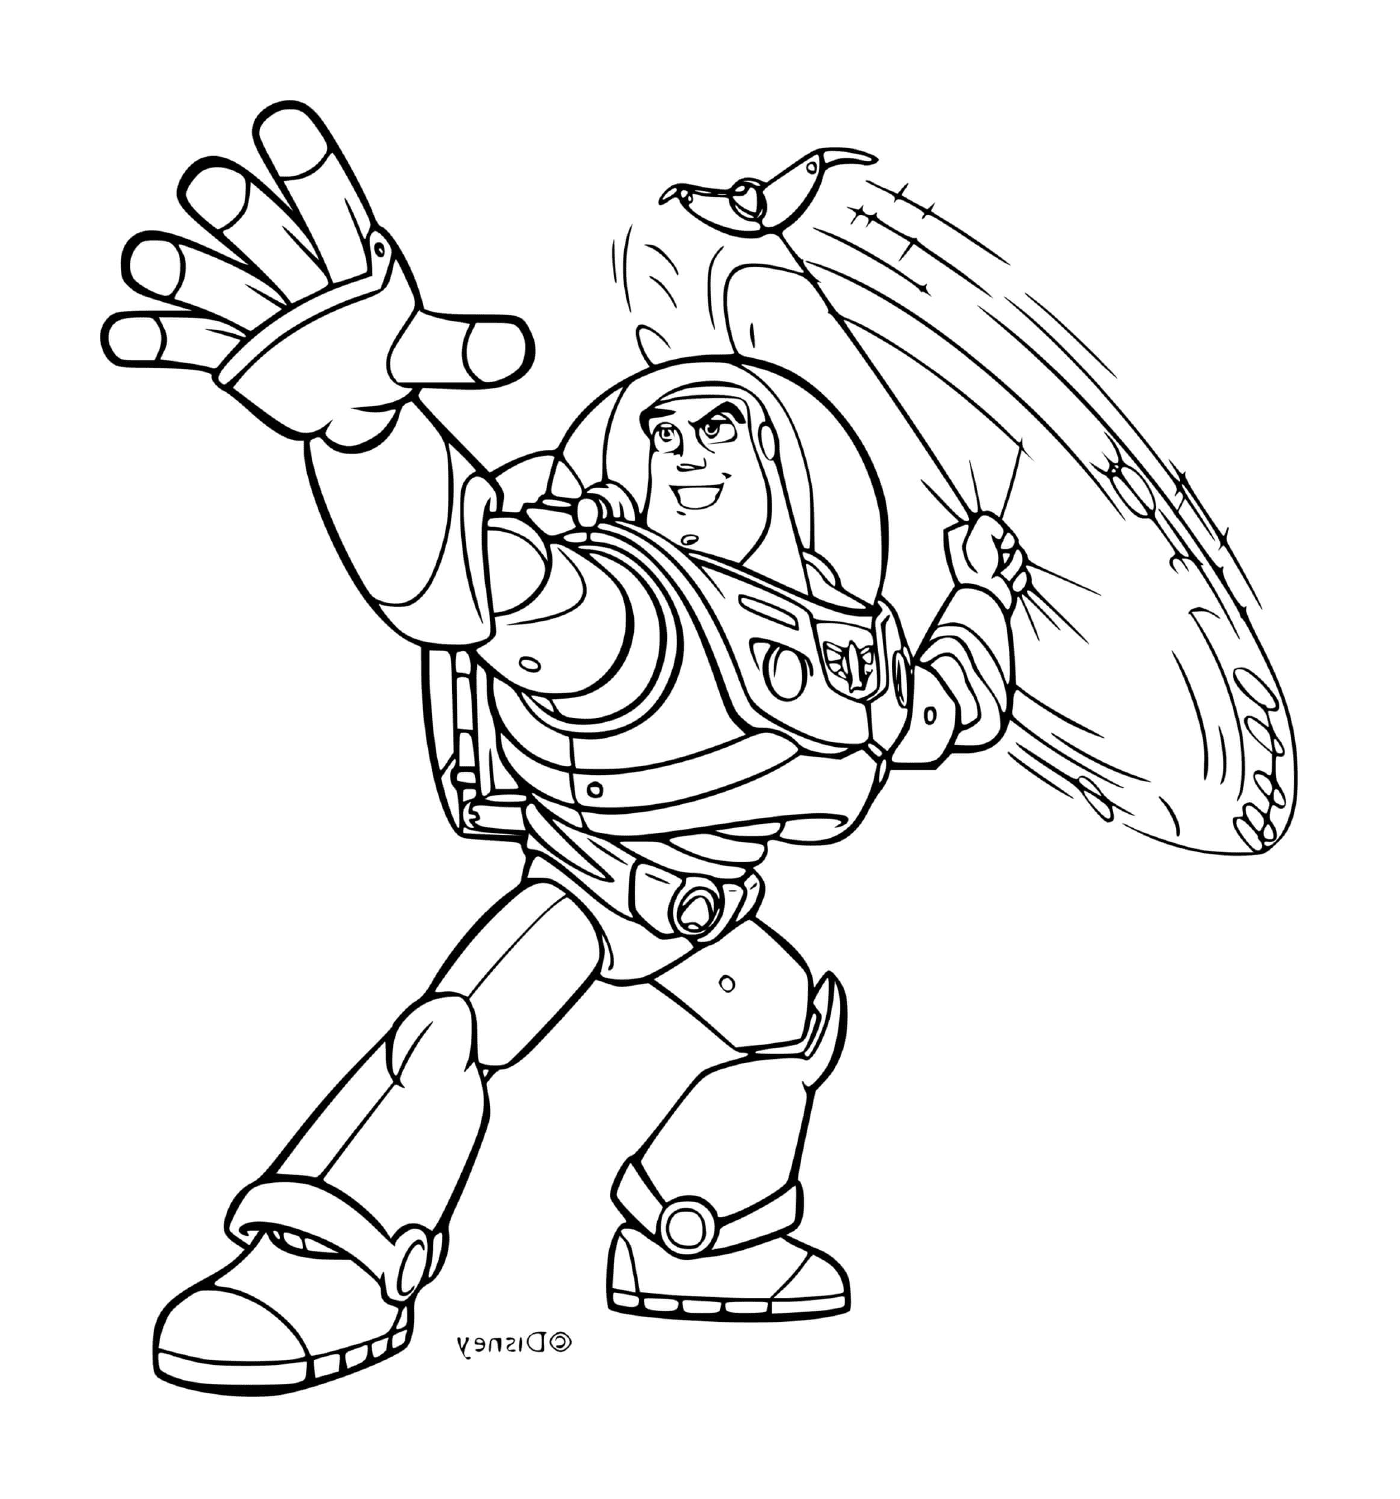  Buzz flash, personaje de Toy Story 